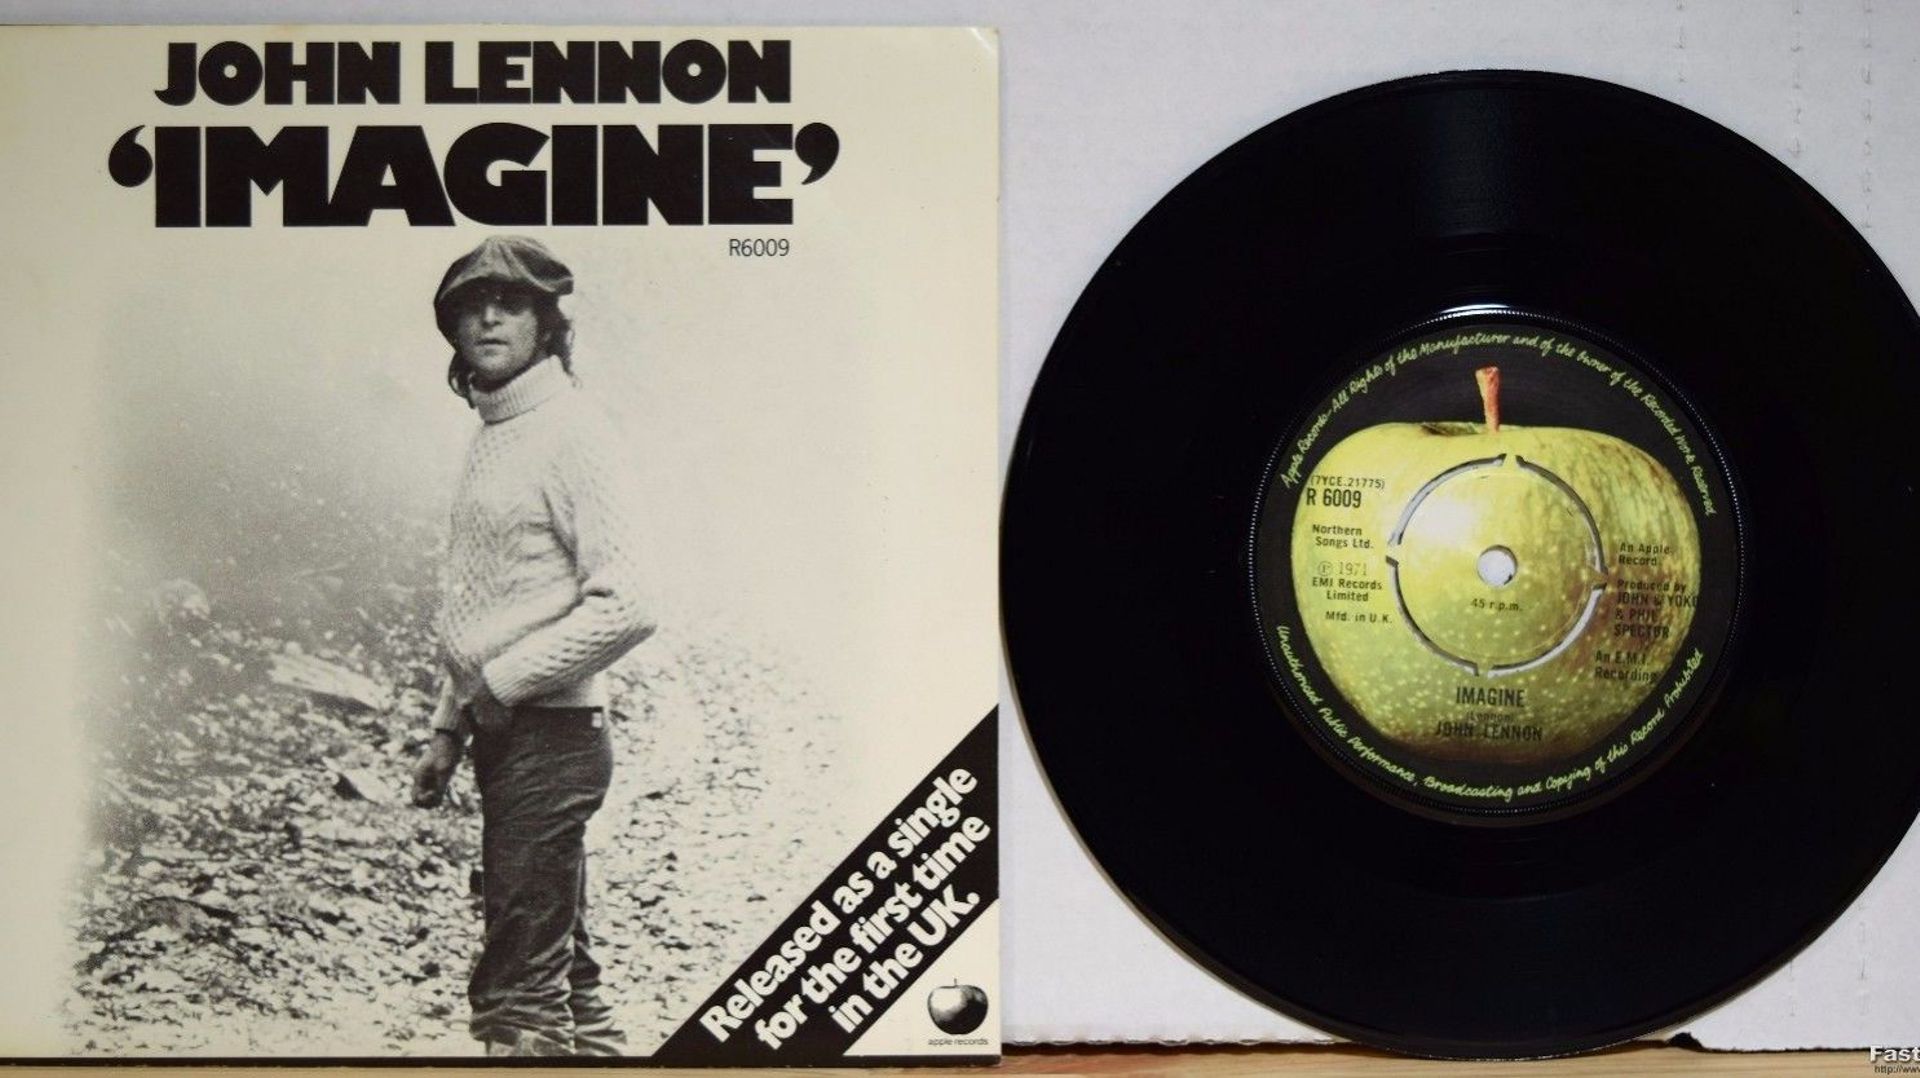 John Lennon : "Imagine"